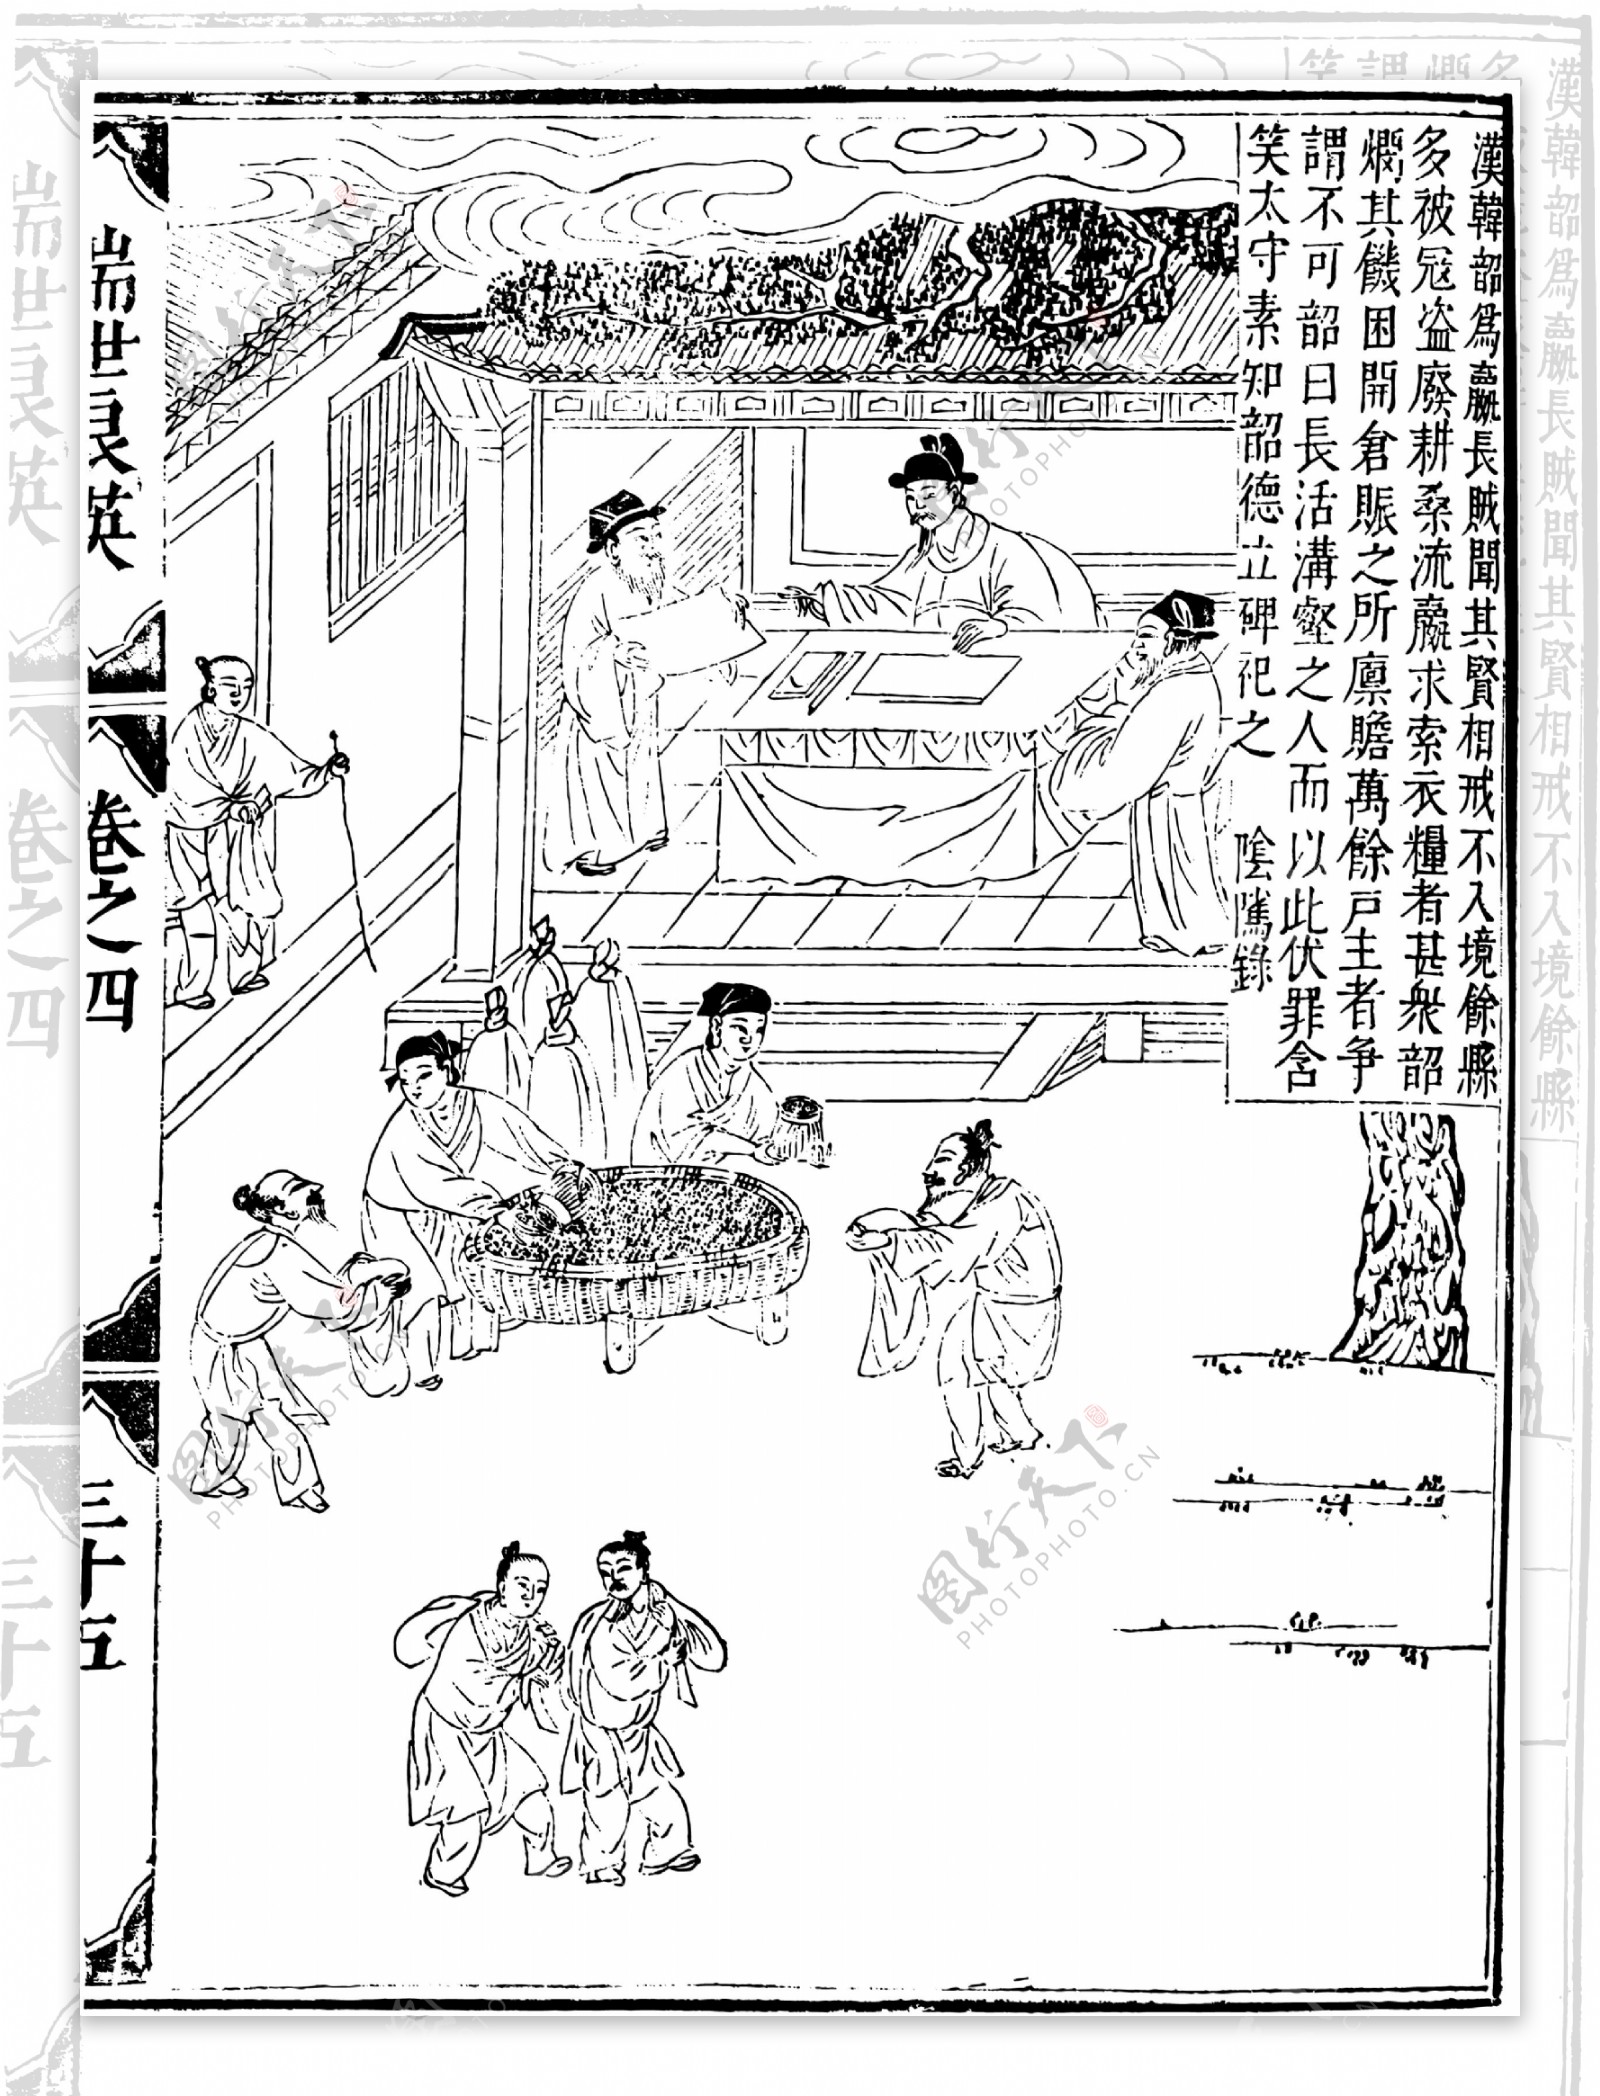 瑞世良英木刻版画中国传统文化13